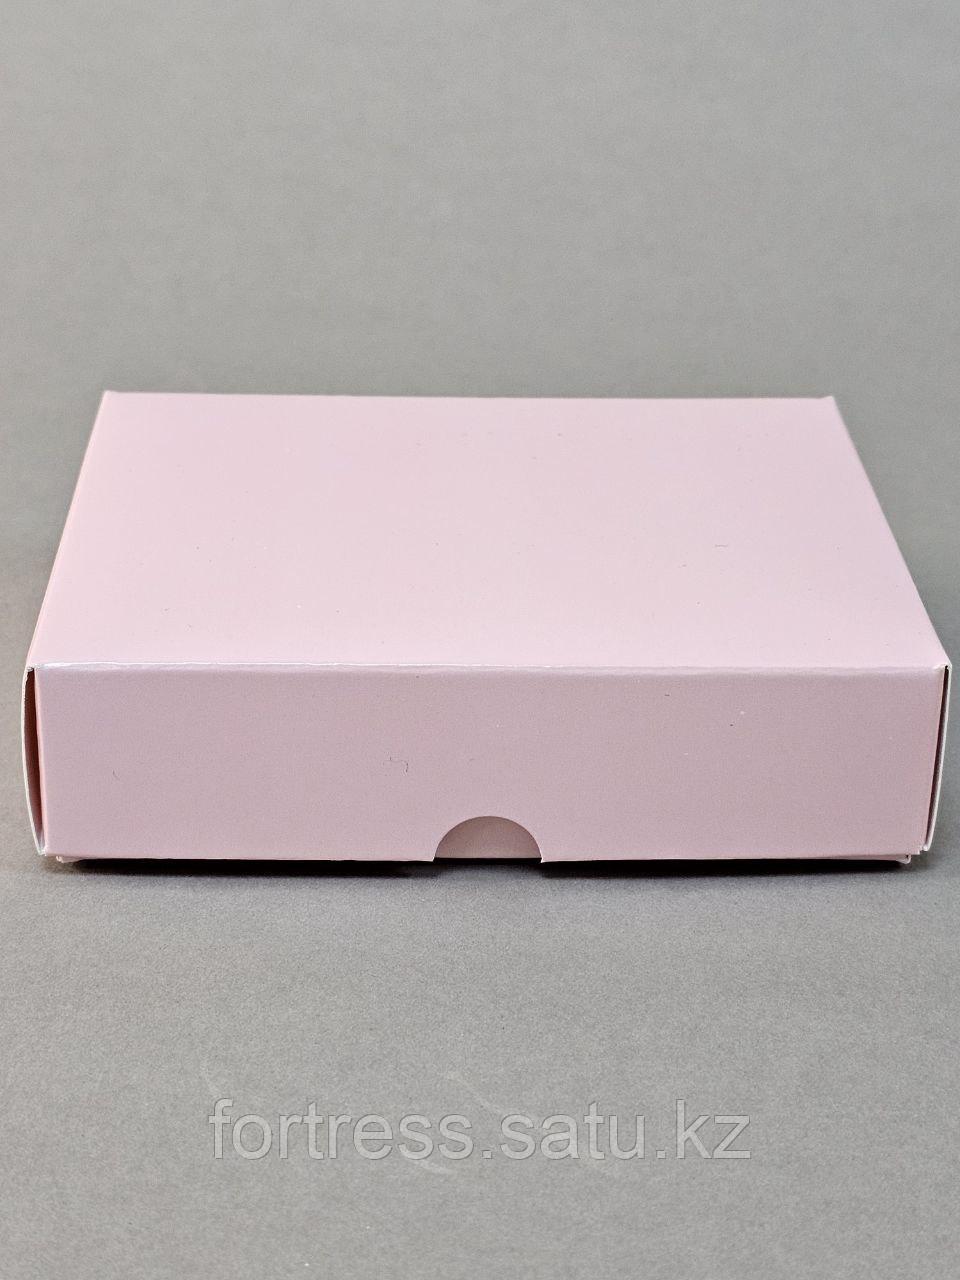 Коробка крышка+дно внешний размер 12*9,5*3см розовая(9*6,5*3)внутренний размер.